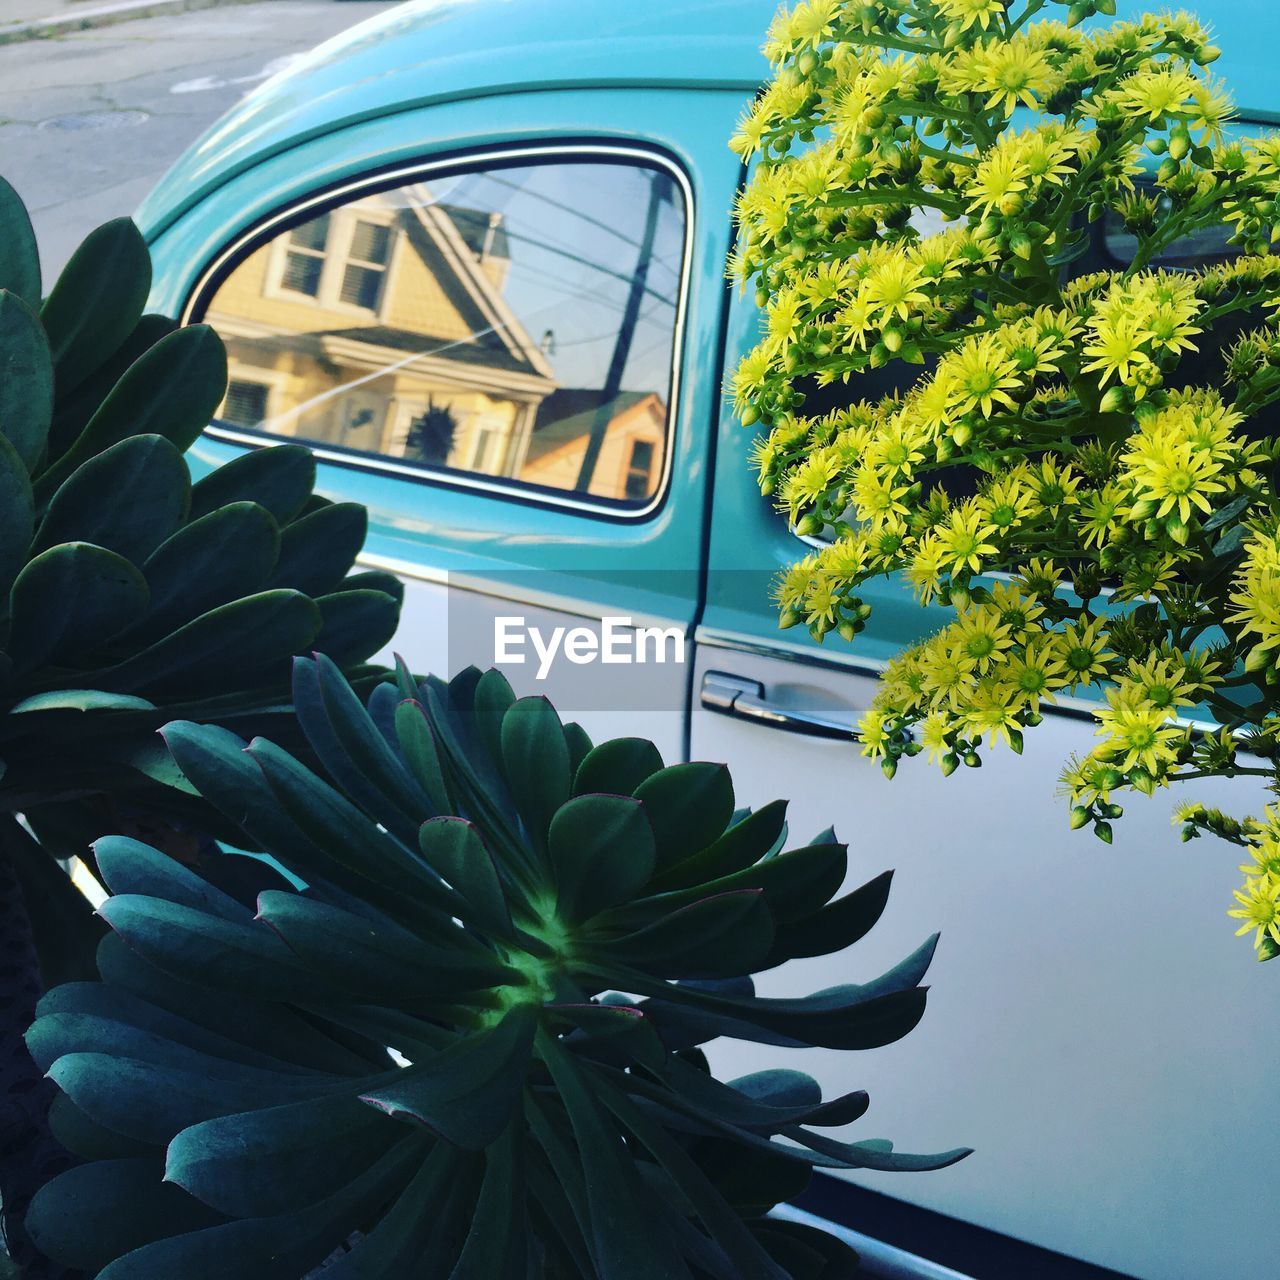 Plants against car